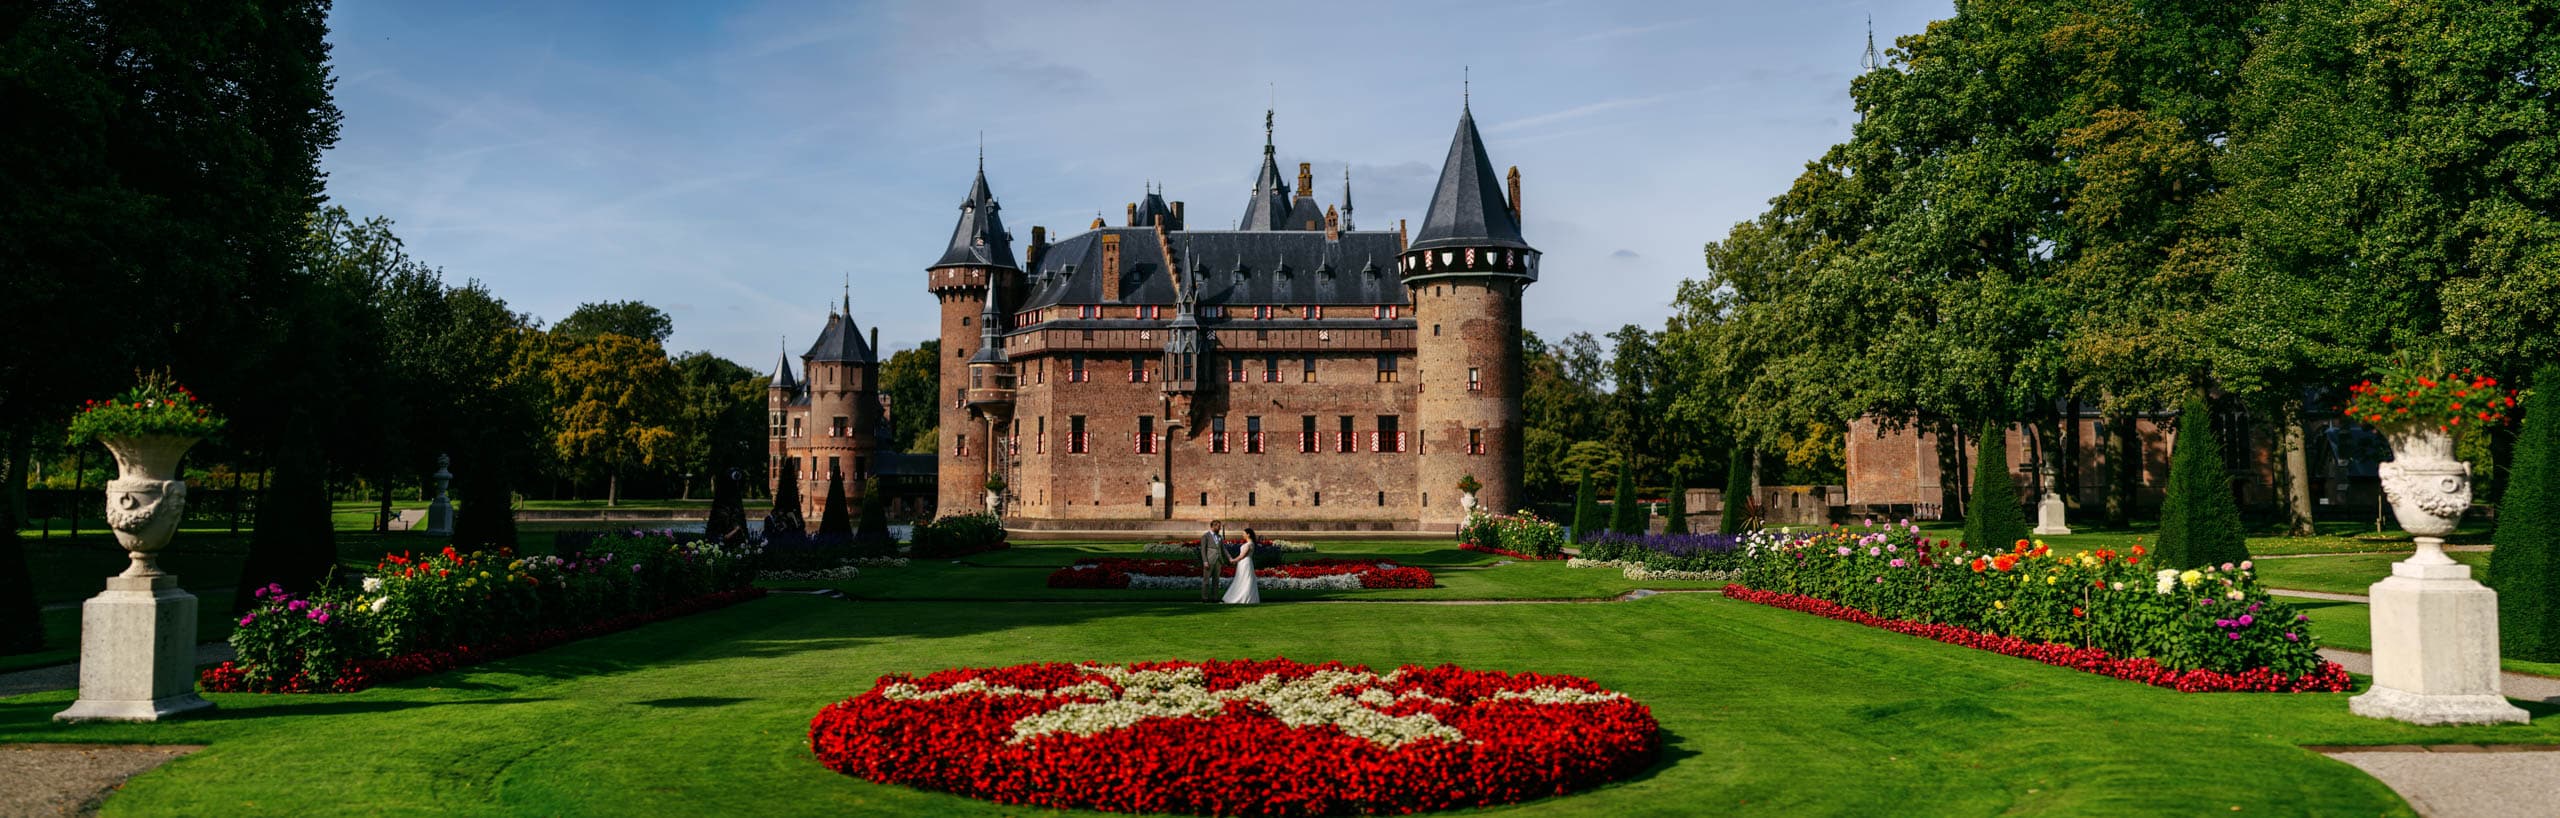 Kasteel de Haar, a large castle set amidst a lush green lawn.